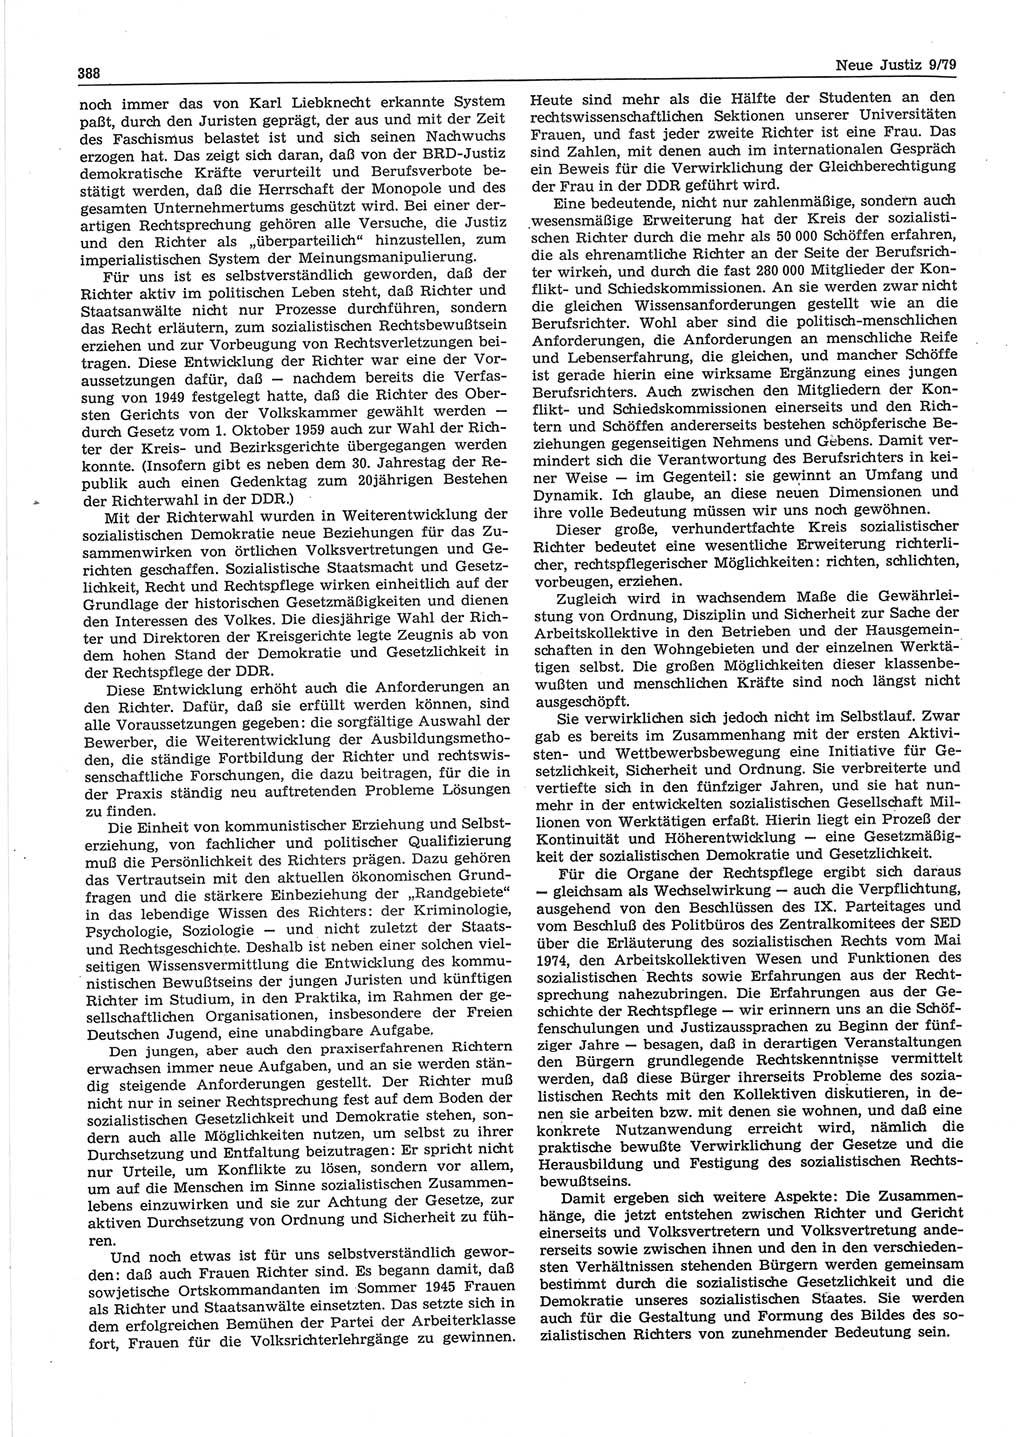 Neue Justiz (NJ), Zeitschrift für sozialistisches Recht und Gesetzlichkeit [Deutsche Demokratische Republik (DDR)], 33. Jahrgang 1979, Seite 388 (NJ DDR 1979, S. 388)